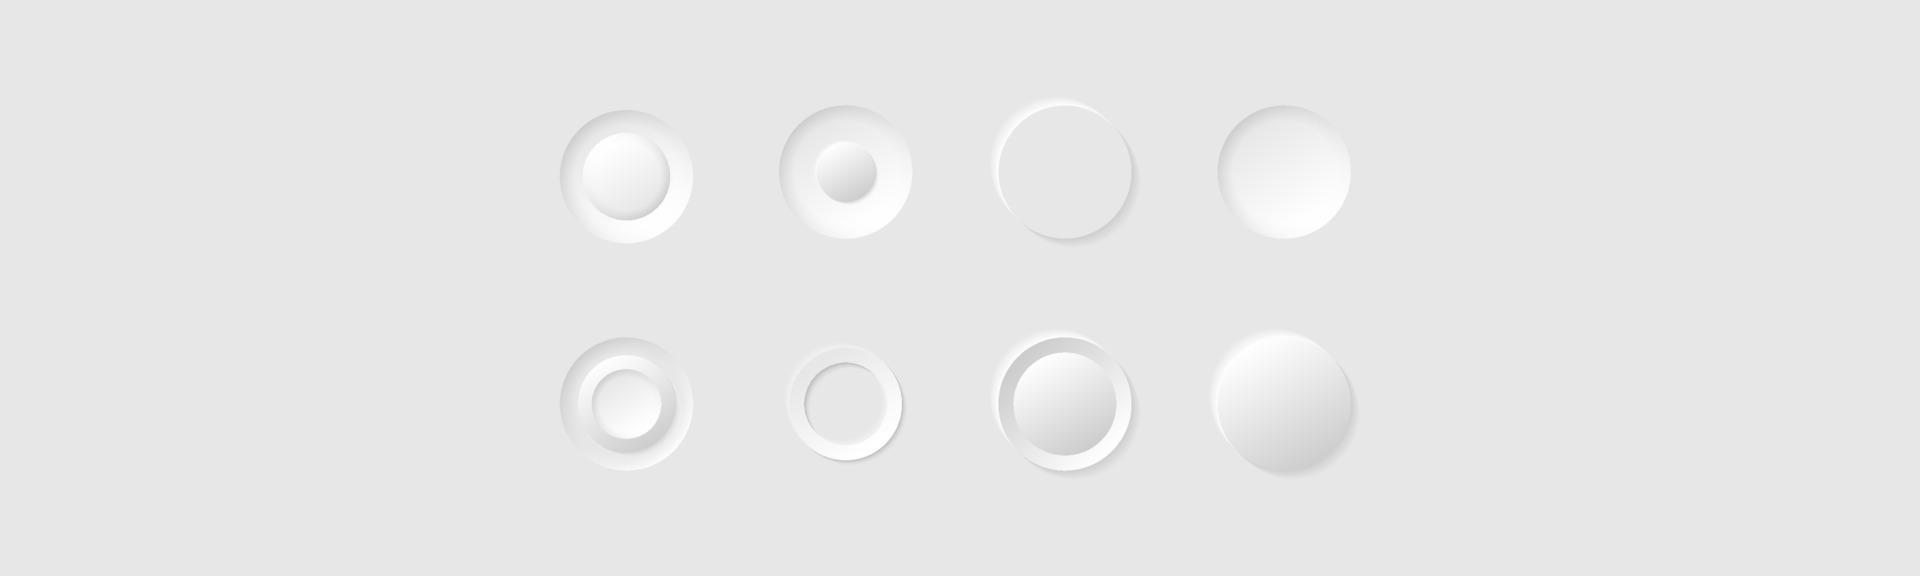 pulsanti o icone del cerchio bianco in stile minimalismo. insieme di vettore degli elementi di stile del neumorfismo. sito Web moderno o design di app mobili. collezione di design di ui ux neumorfici